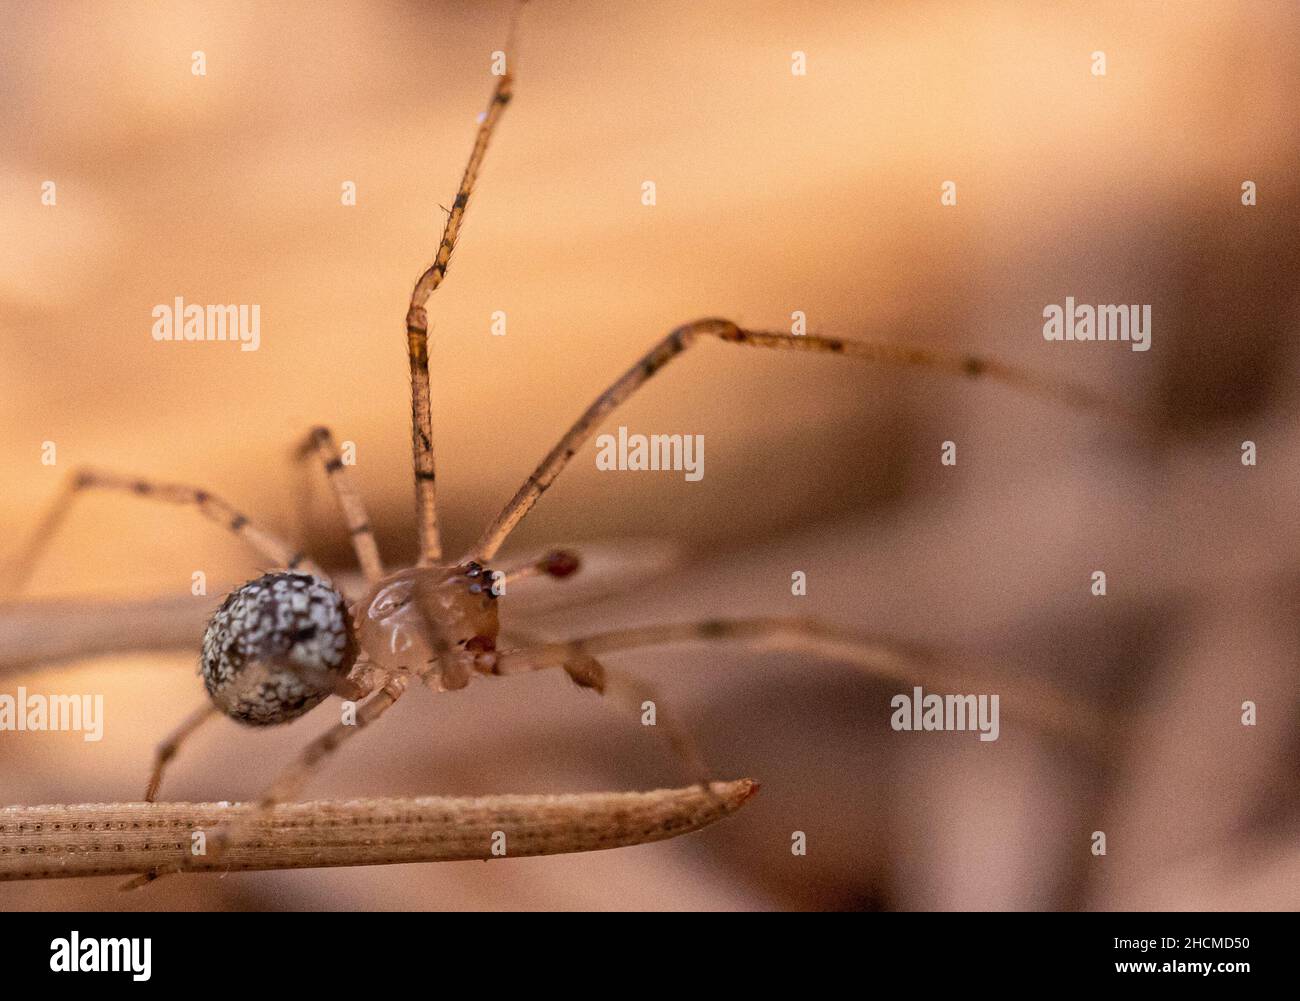 Selektive Fokusaufnahme einer haymaker-Spinne Stockfoto